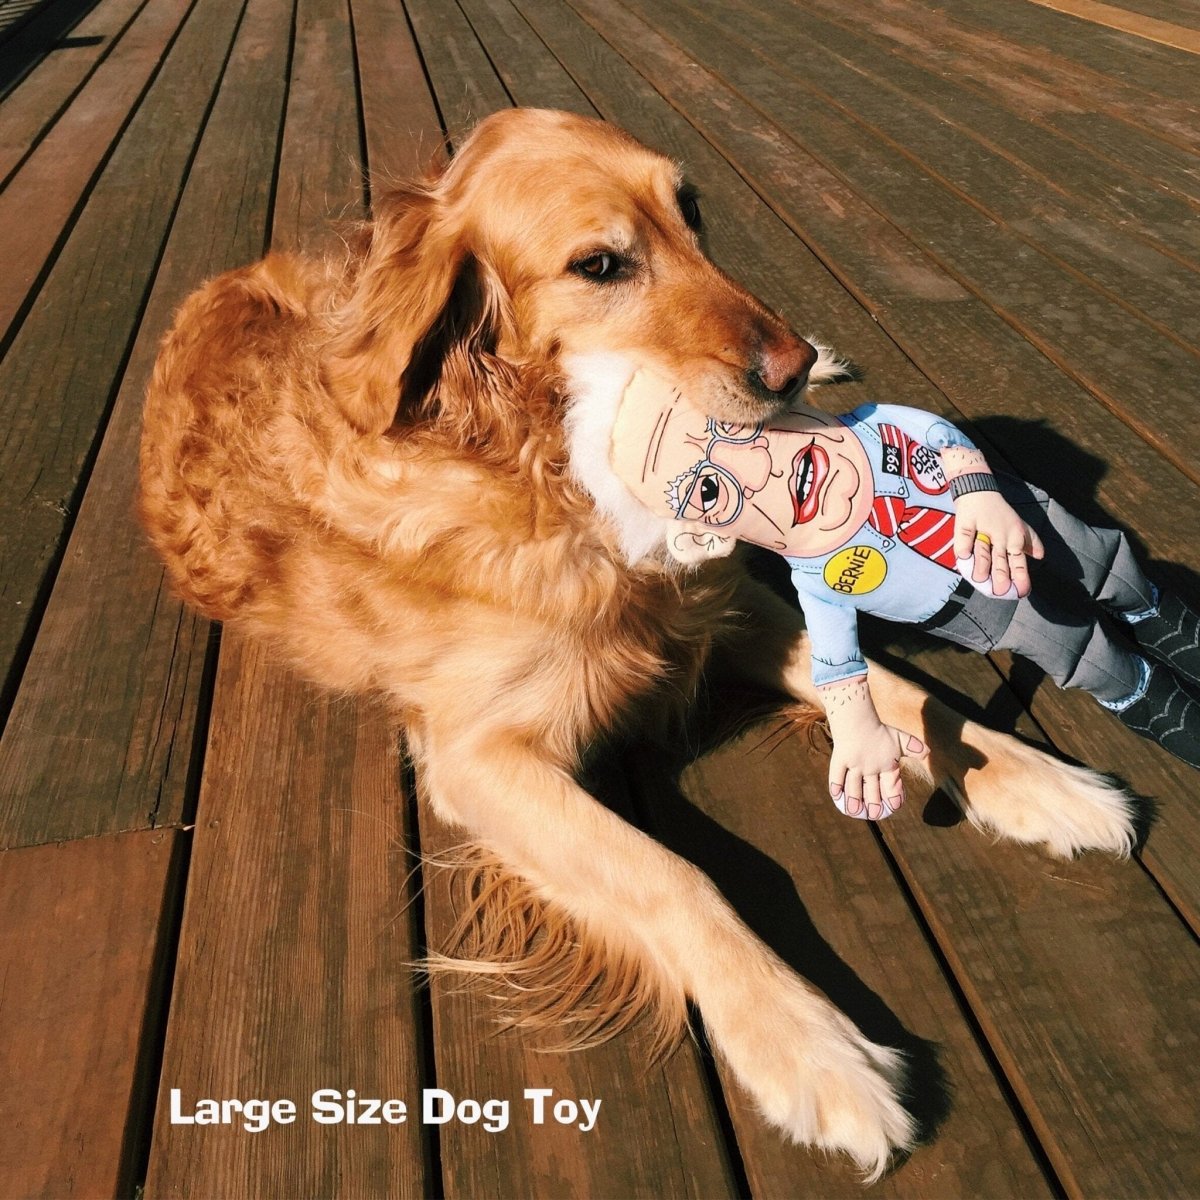 Bernie Sanders Dog Toy - Oh My Paw'd